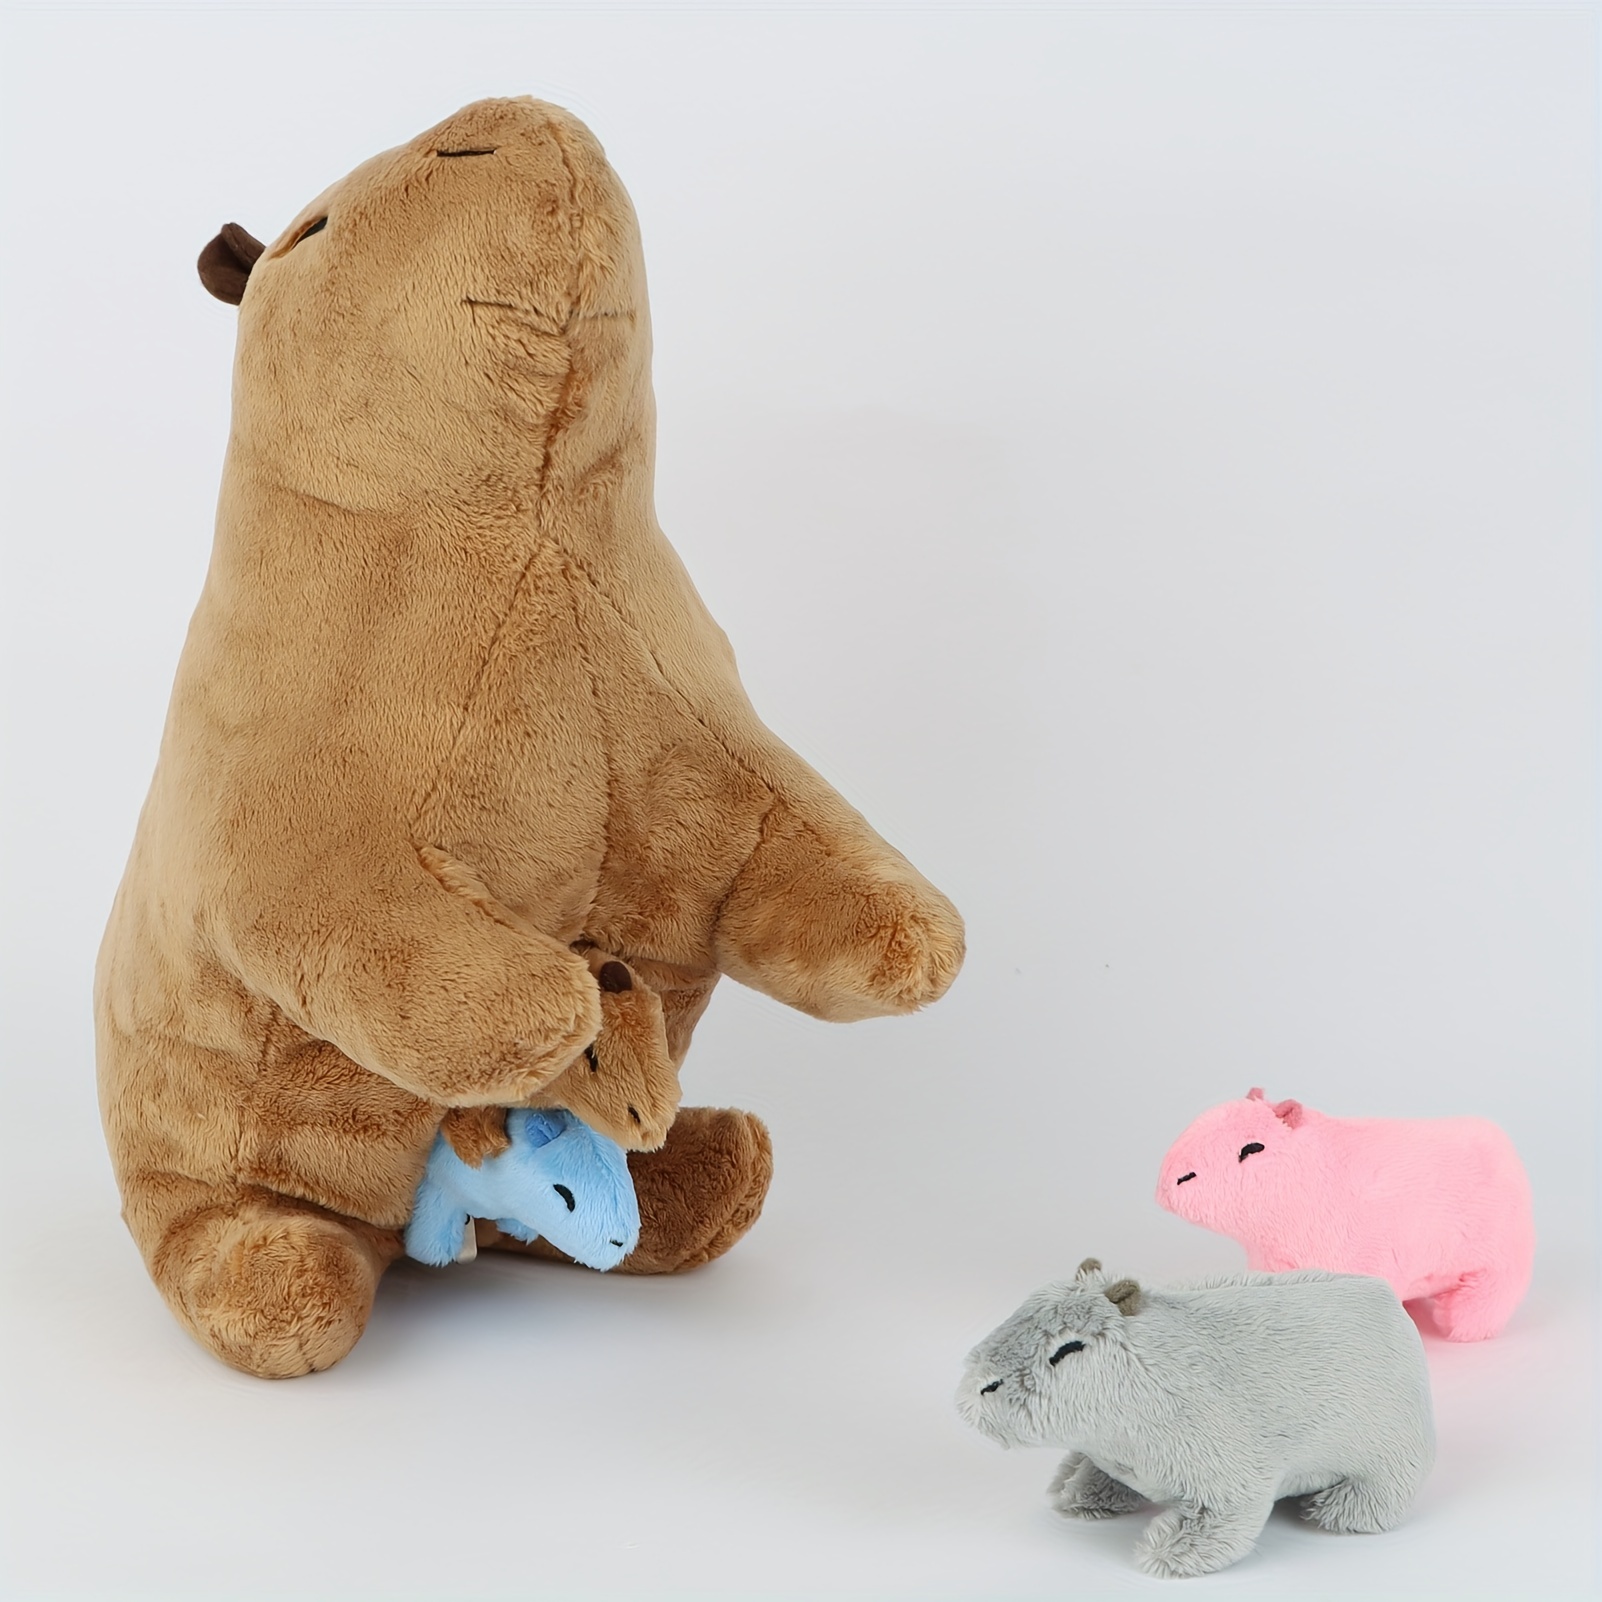 Toyvian 4 Stück Simulations-capybara-modell Dekoration Kleine